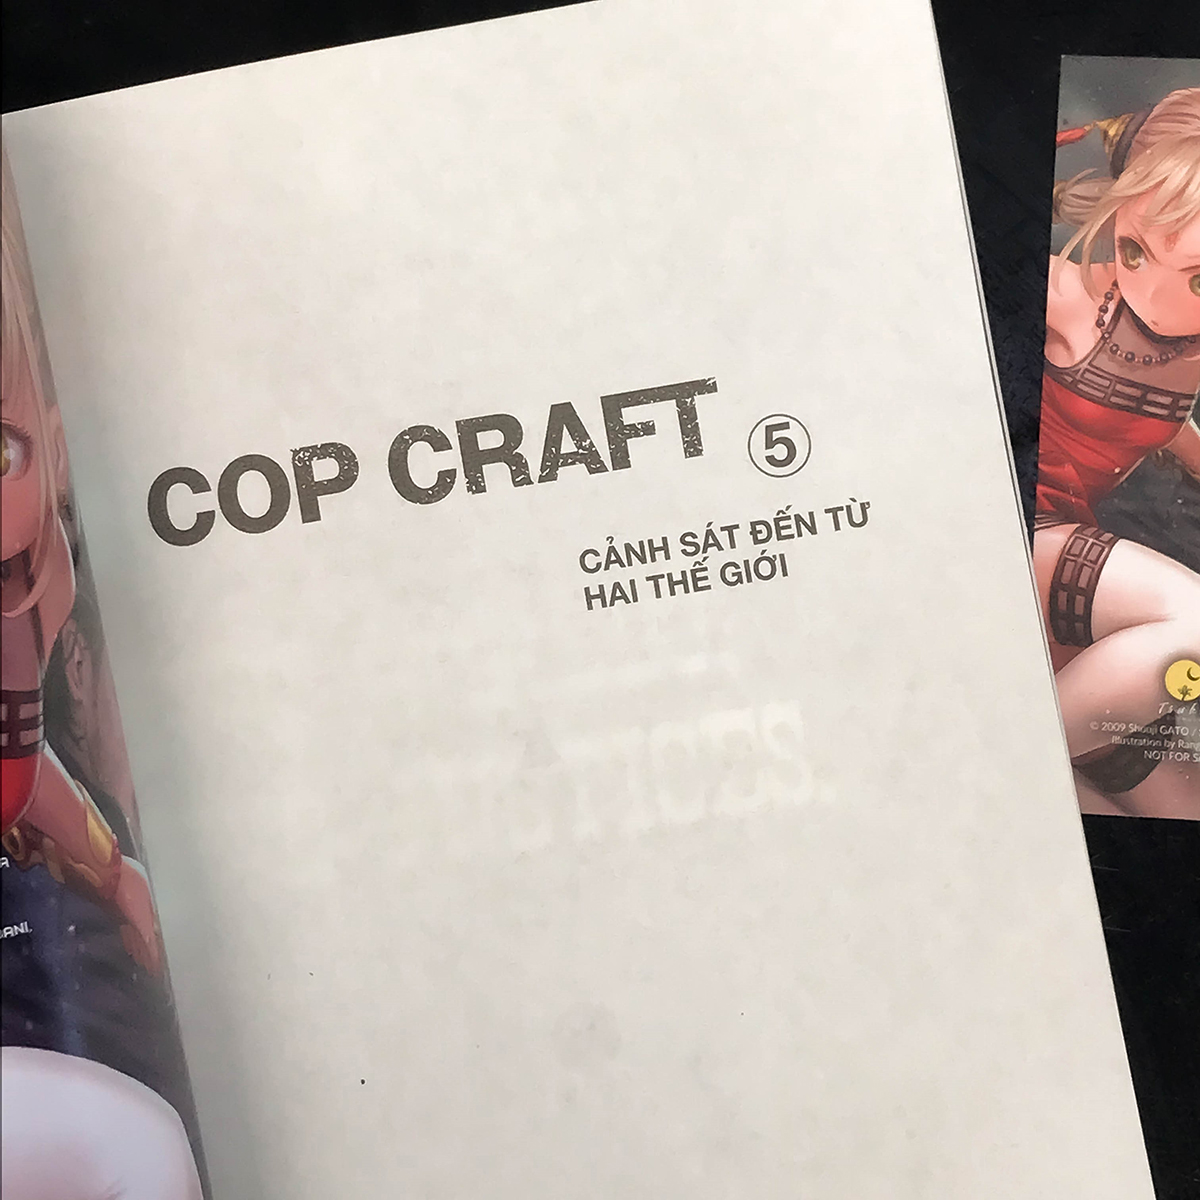 Cop Craft – Cảnh Sát Đến Từ Hai Thế Giới (Tập 5)